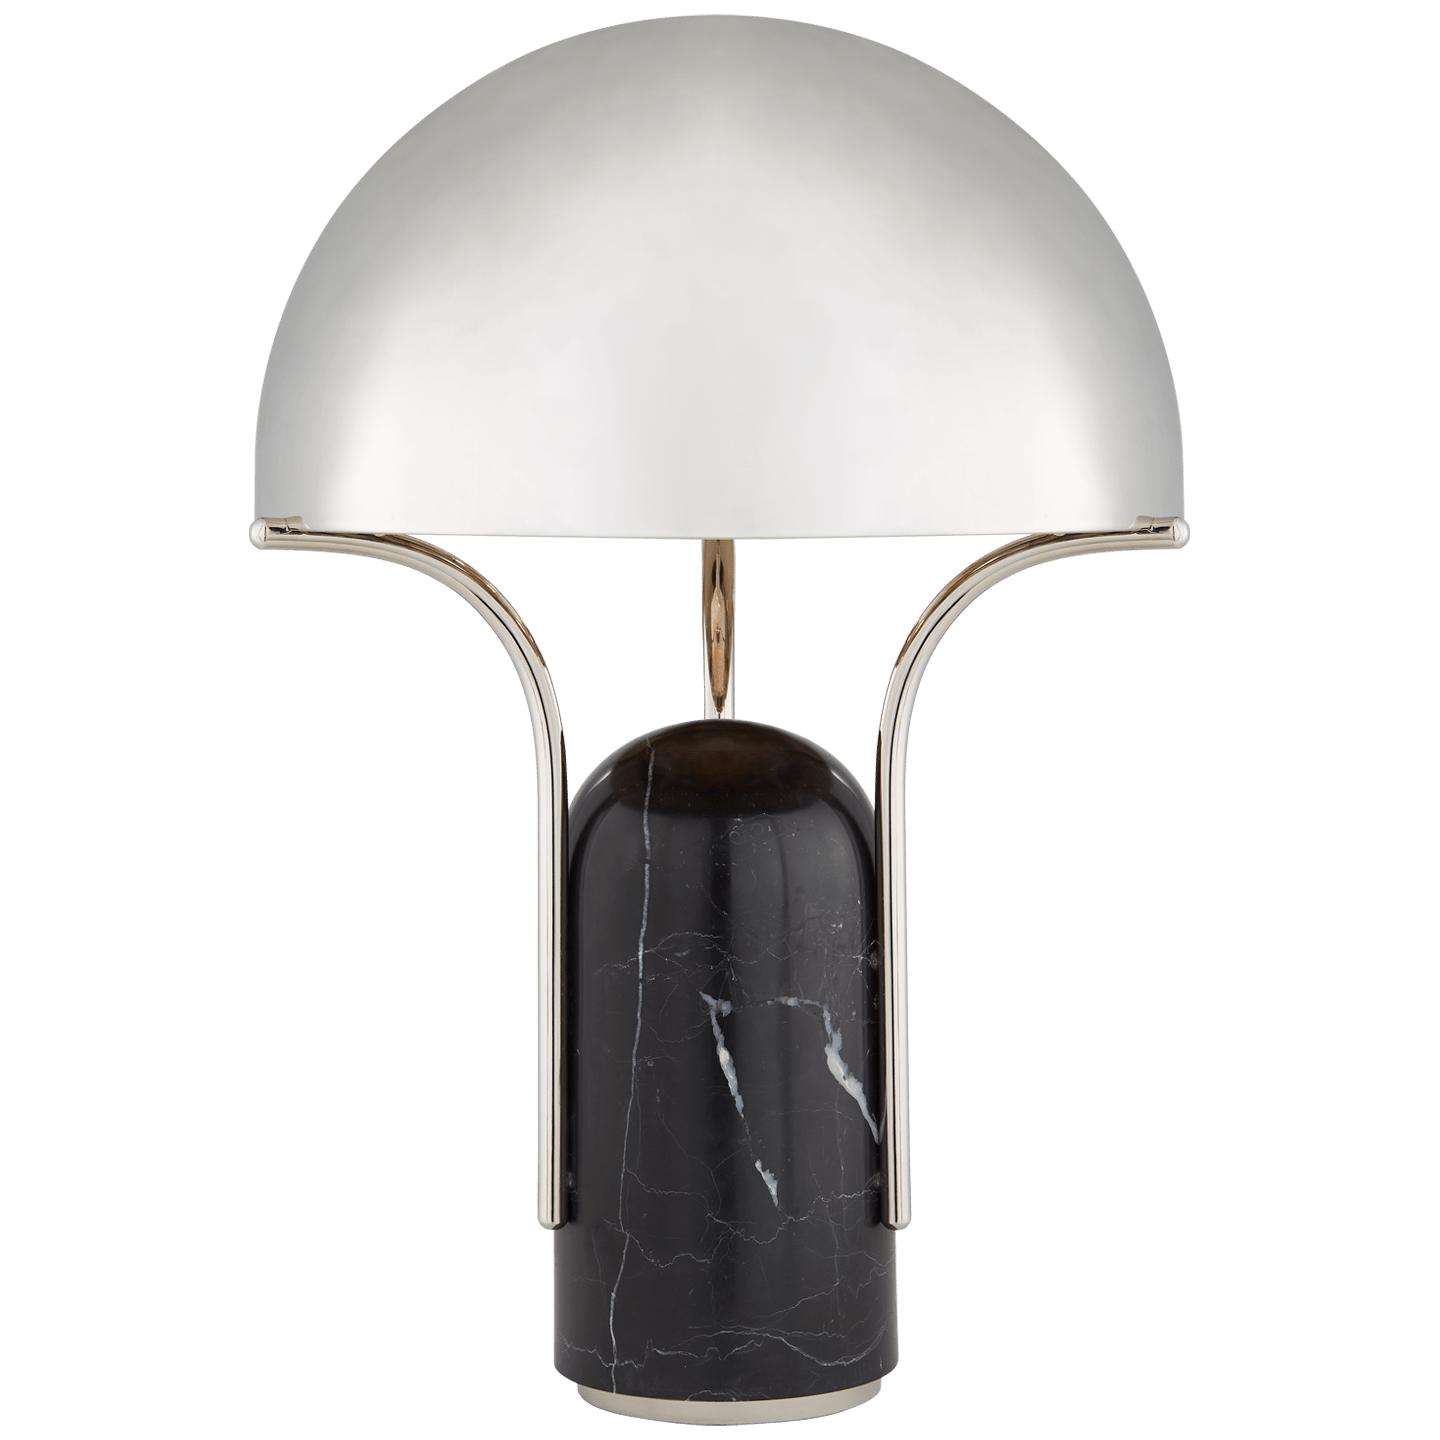 Купить Настольная лампа Affinity Medium Dome Table Lamp в интернет-магазине roooms.ru